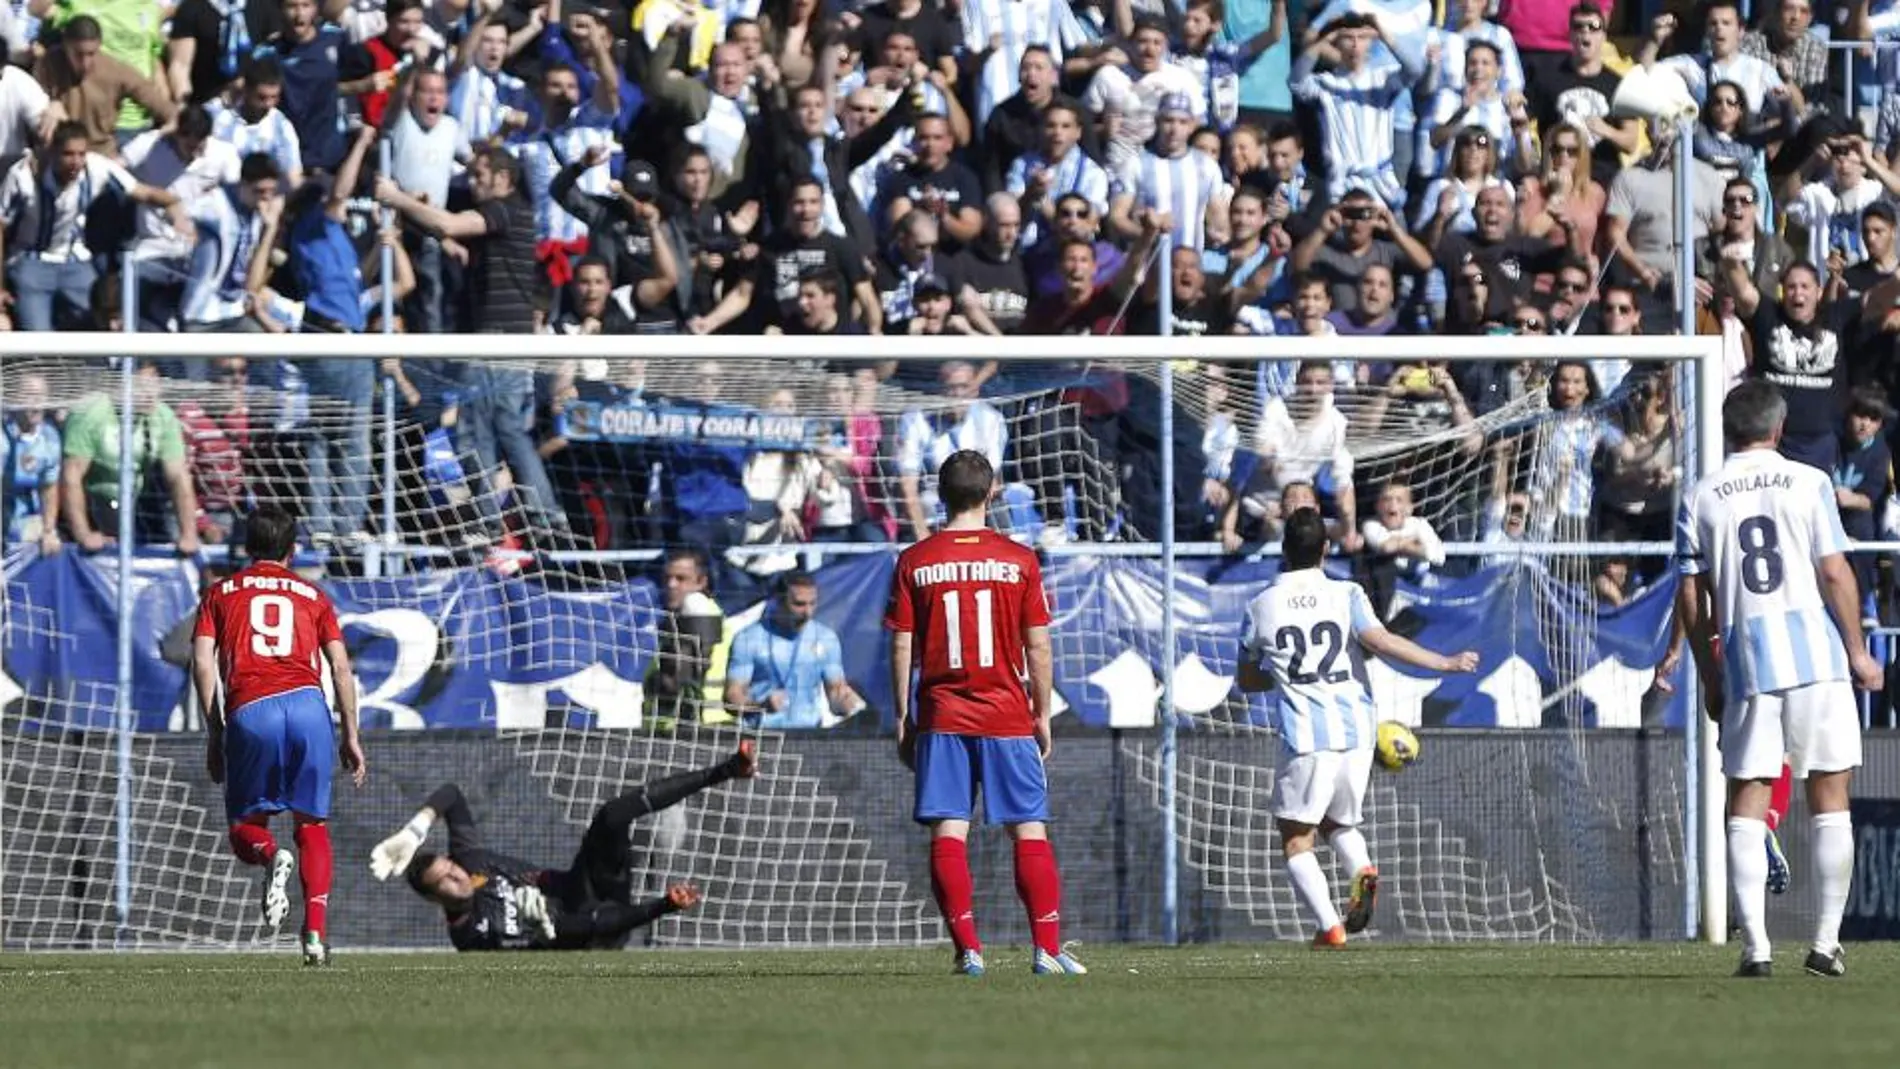 El central de Málaga Francisco R. Alracón "Isco"ejecuta la pena máxima y marca gol ante el portero del Real Zaragoza Roberto Jiménez Gago